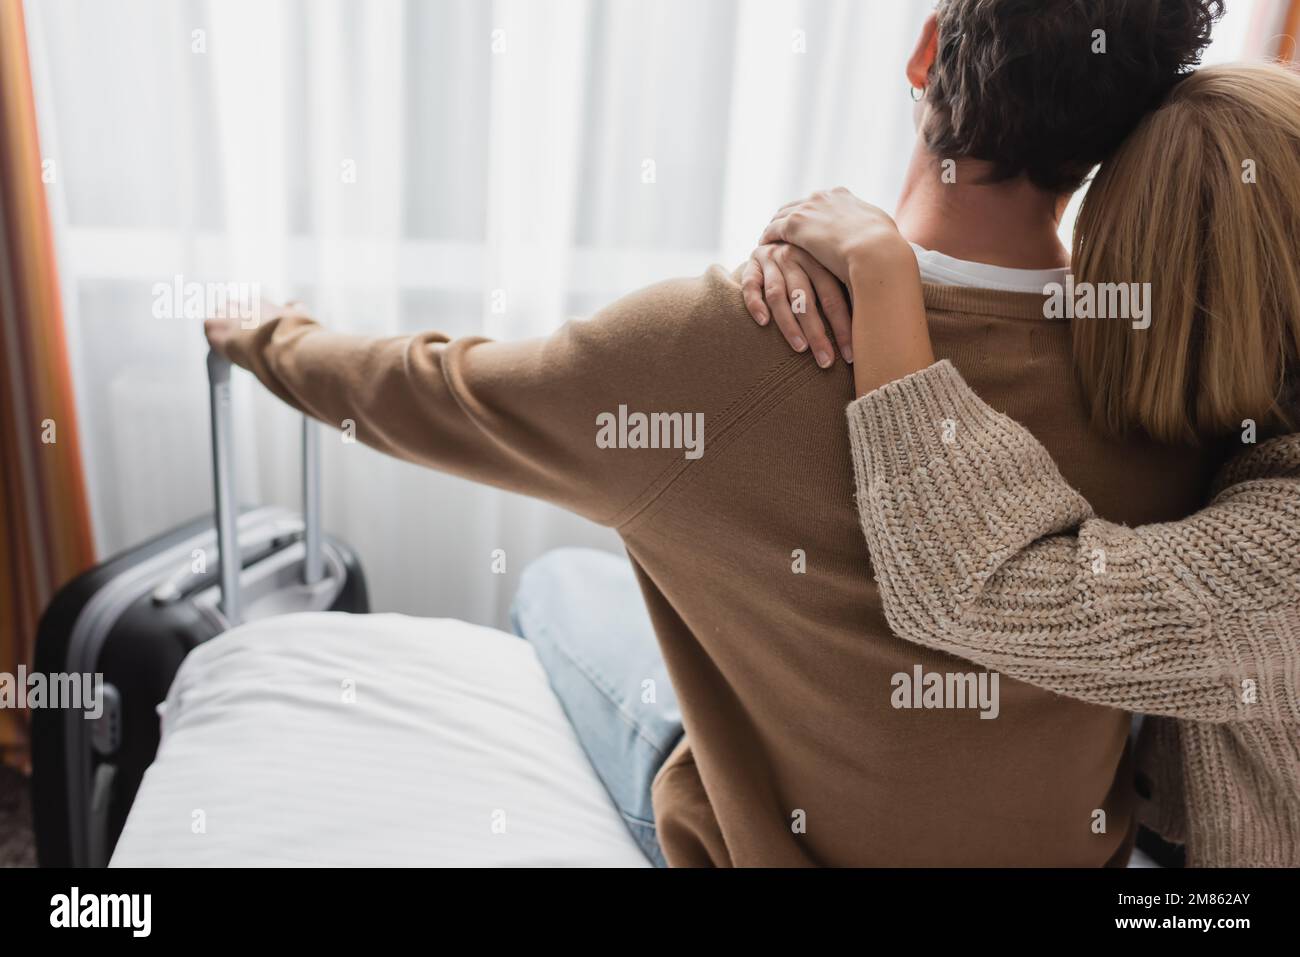 Rückansicht einer blonden Frau, die ihren Freund umarmt, während sie im Hotel auf dem Bett sitzt, Stockbild Stockfoto